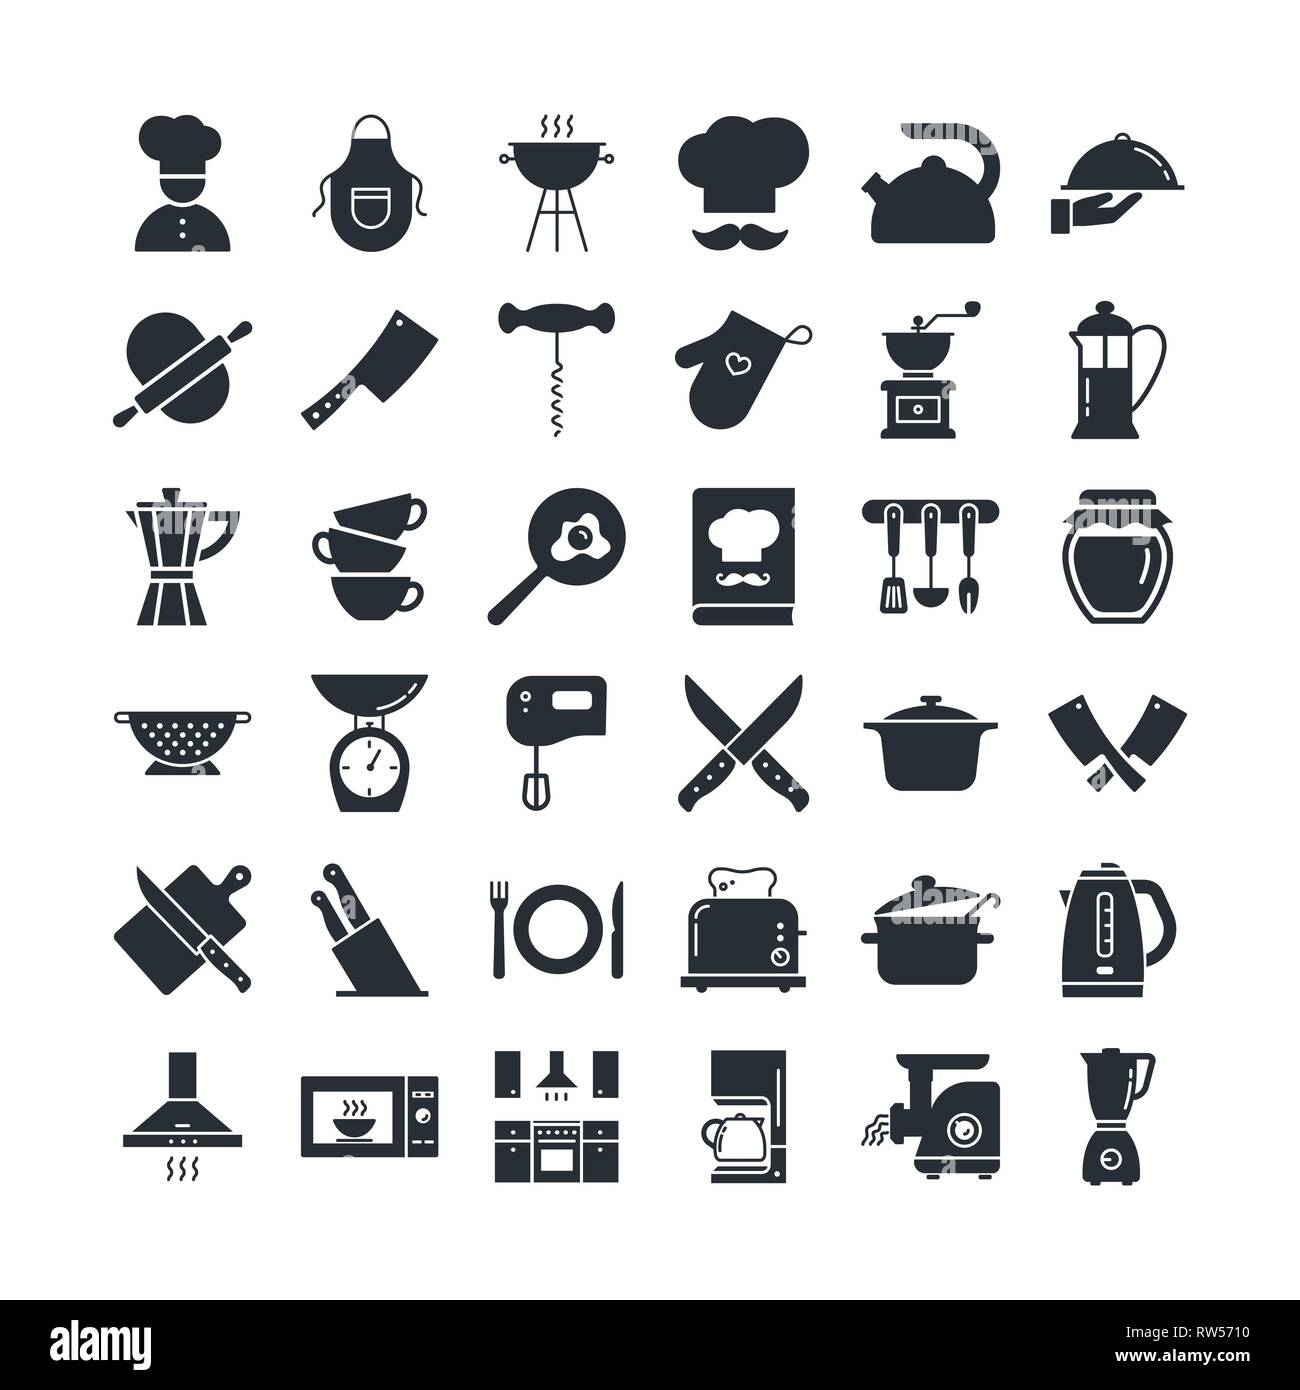 https://c8.alamy.com/compes/rw5710/conjunto-de-iconos-en-el-tema-de-cocina-utensilios-de-cocina-logotipos-y-rotulacion-rw5710.jpg